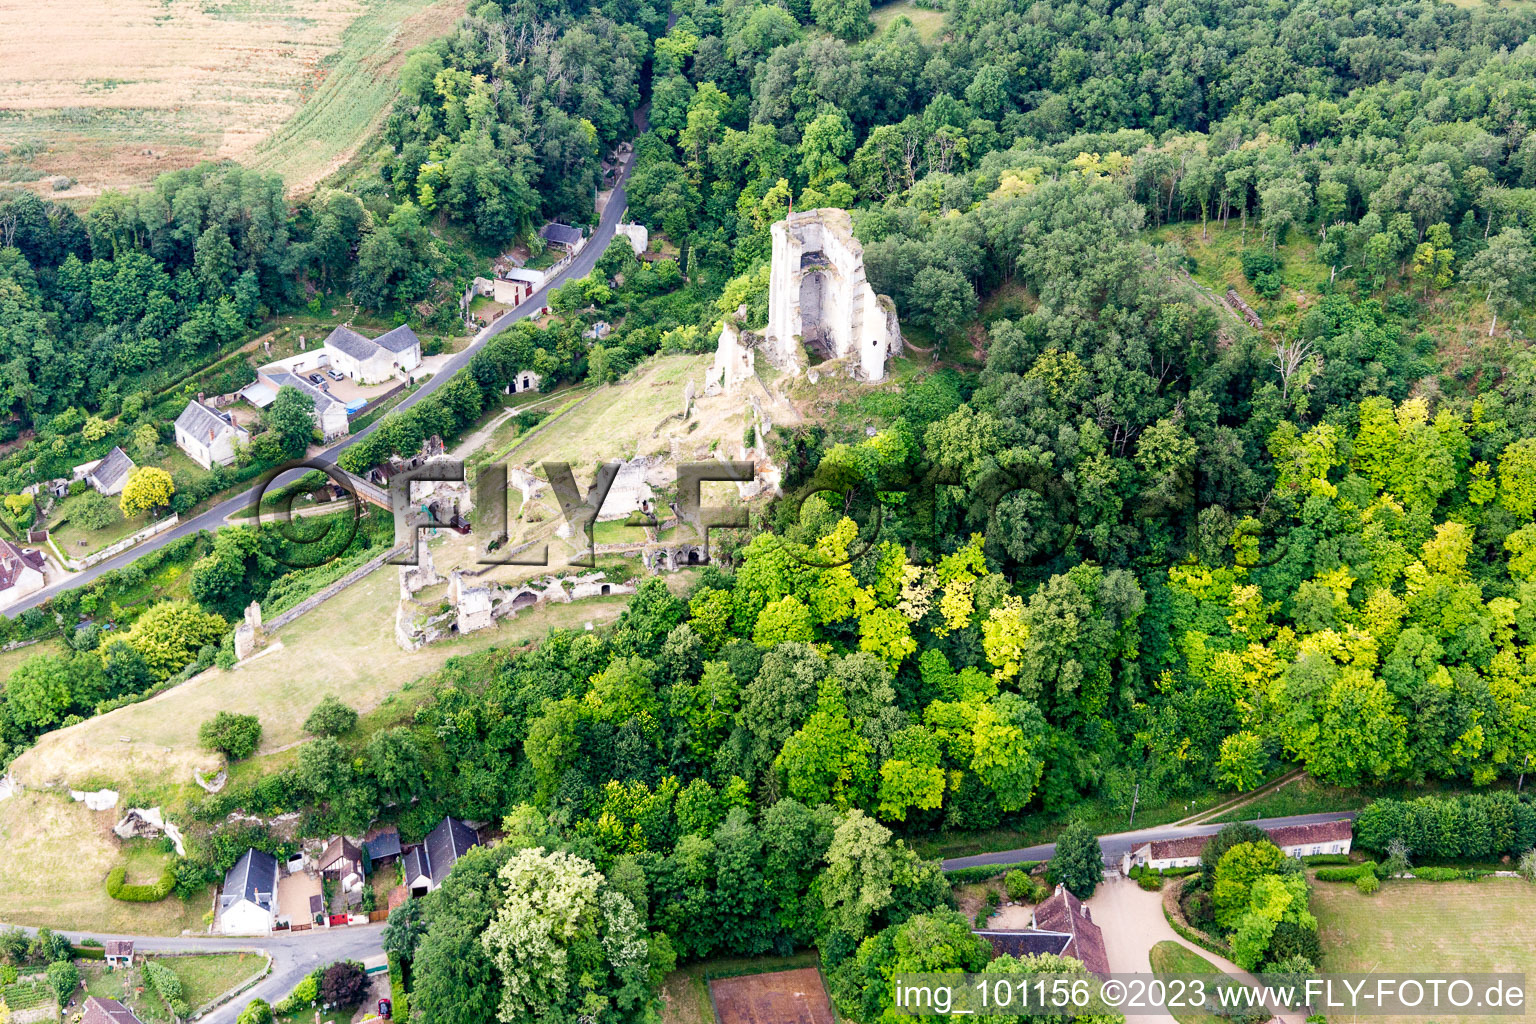 Lavardin im Bundesland Loir-et-Cher, Frankreich aus der Drohnenperspektive